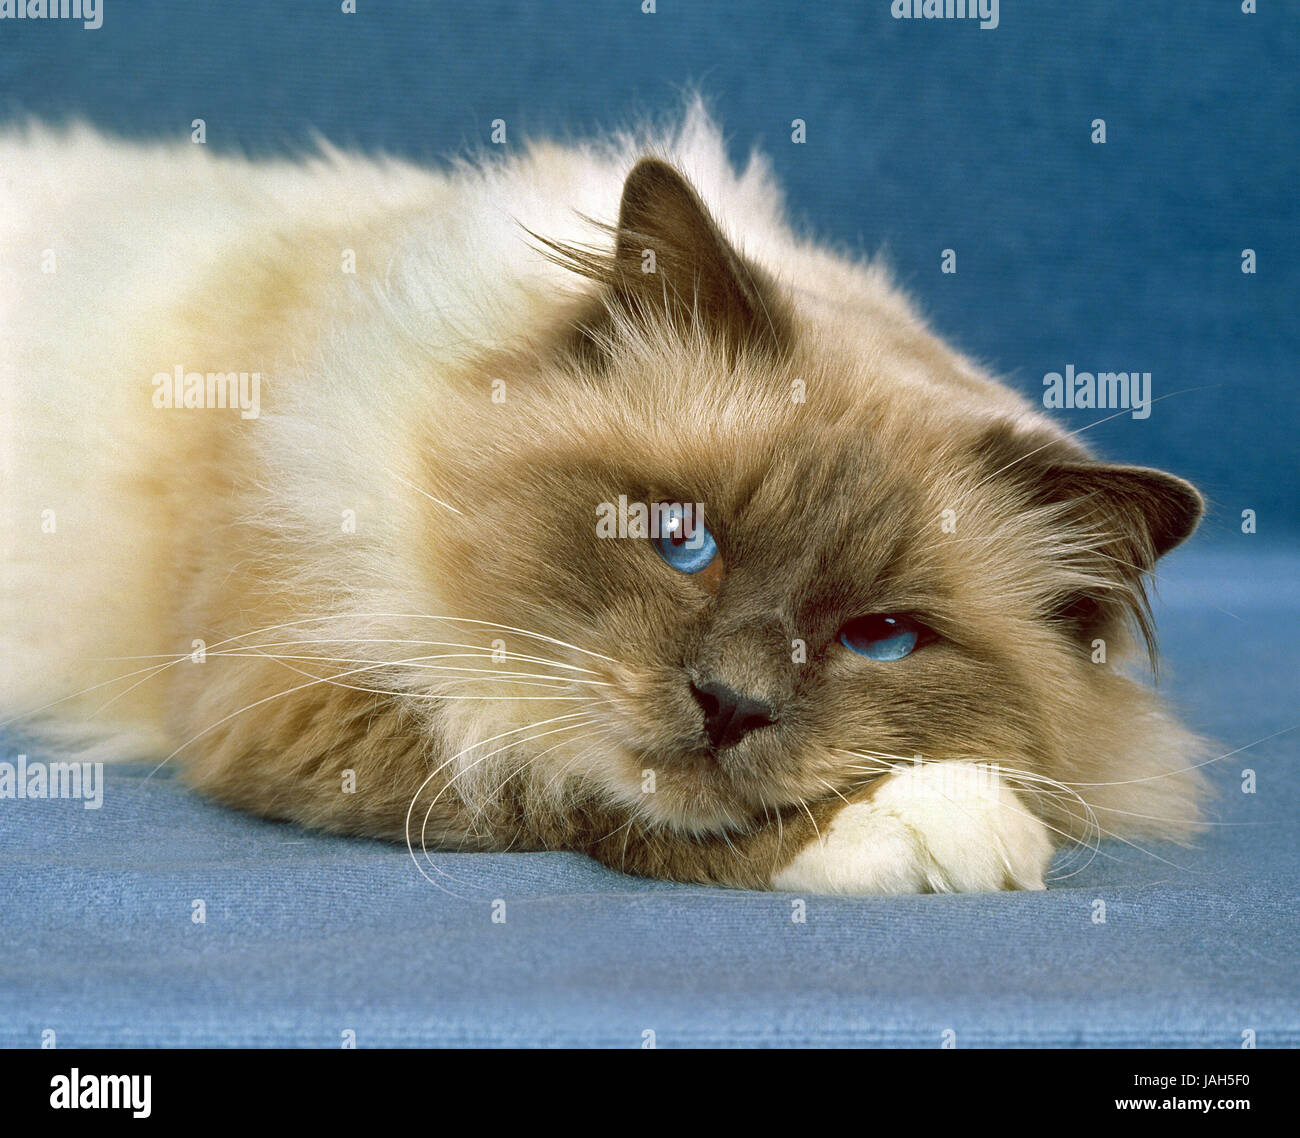 Burma cat,lying,studio, Stock Photo